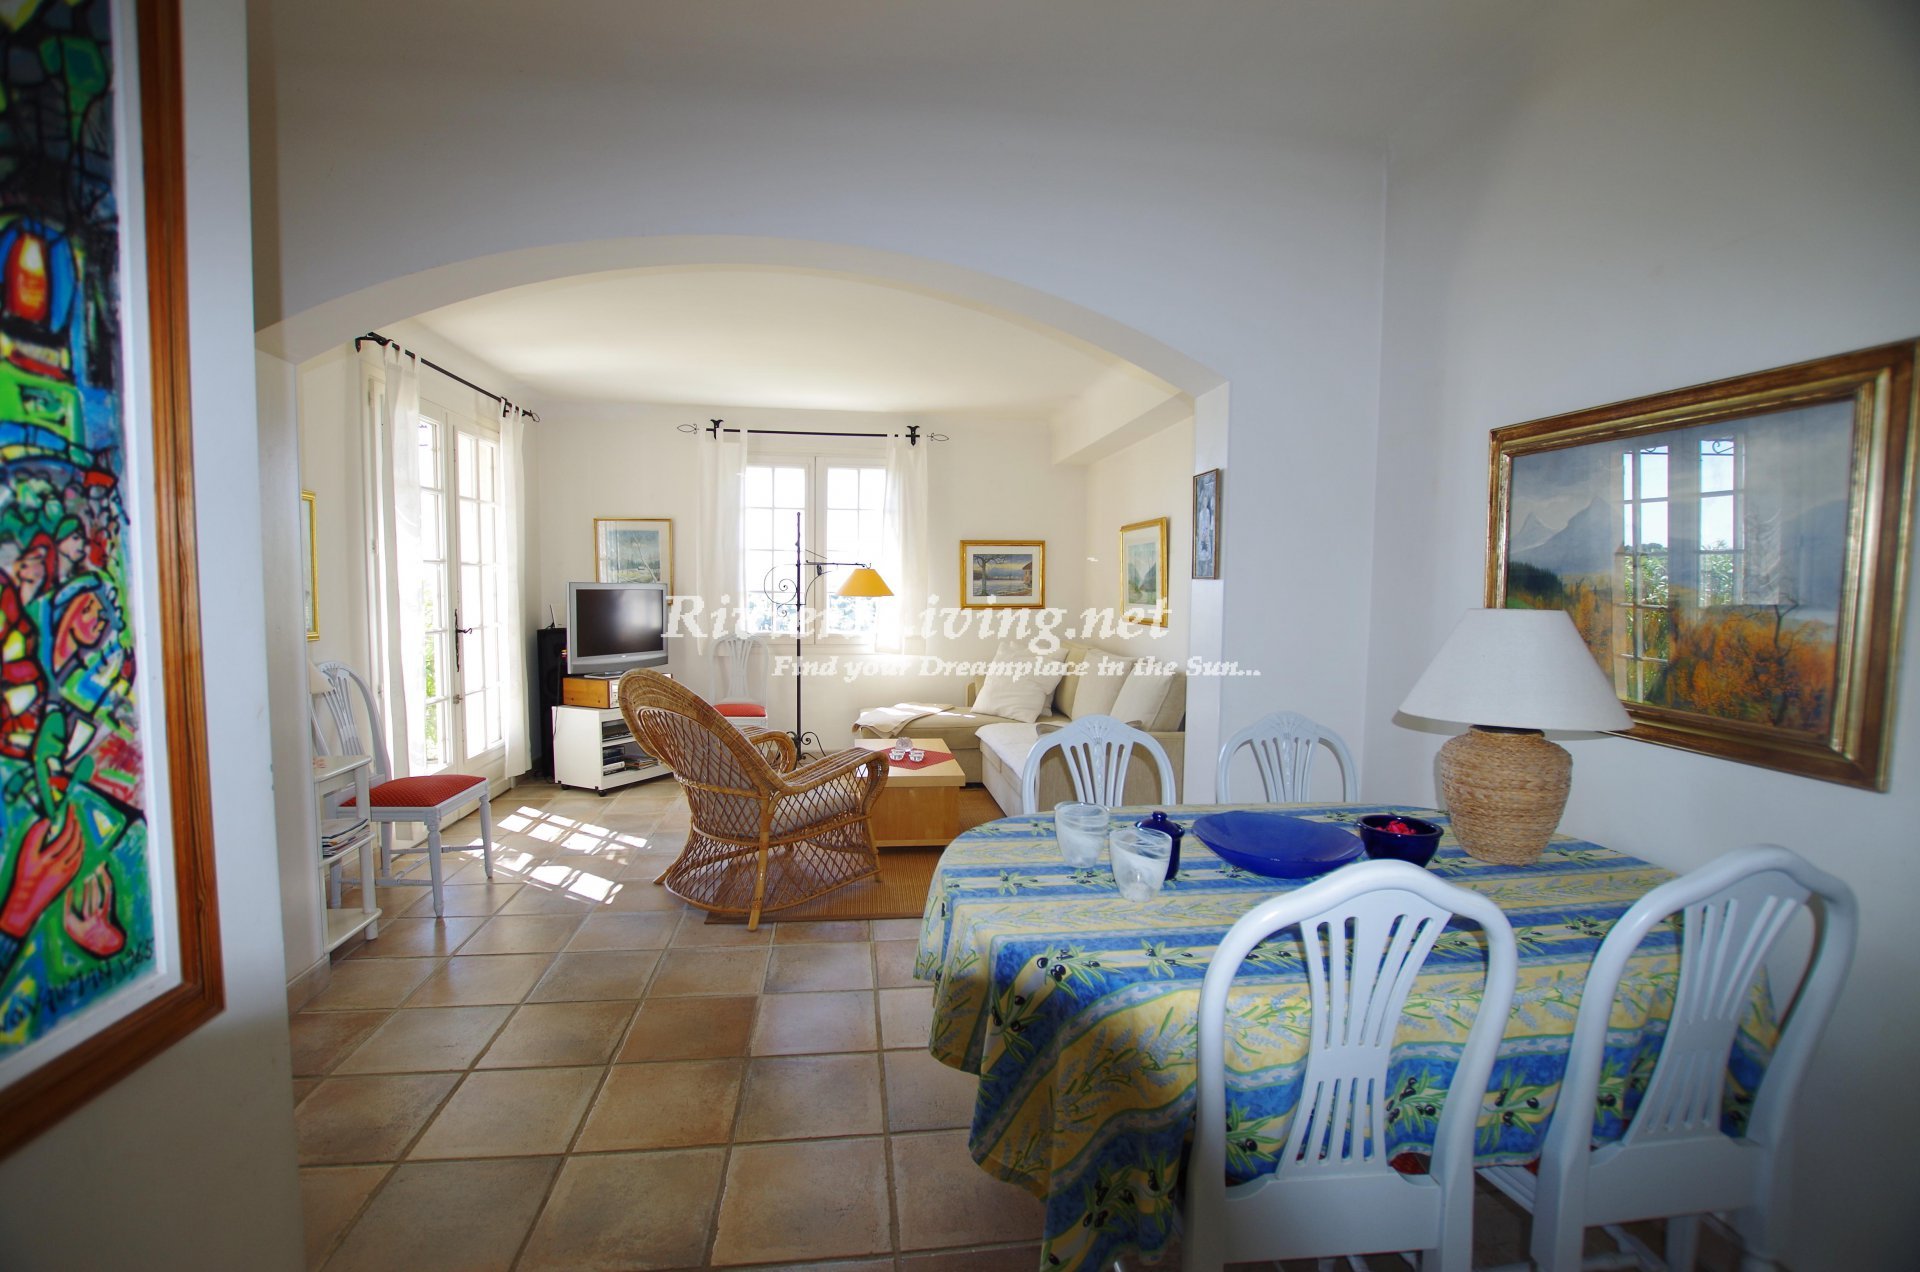 CAGNES SUR MER --- 	Fin lägenhet med havsutsikt, tillgång till pool, nära Antibes, Nice och havet. Lämplig för 2 till 4 personer.